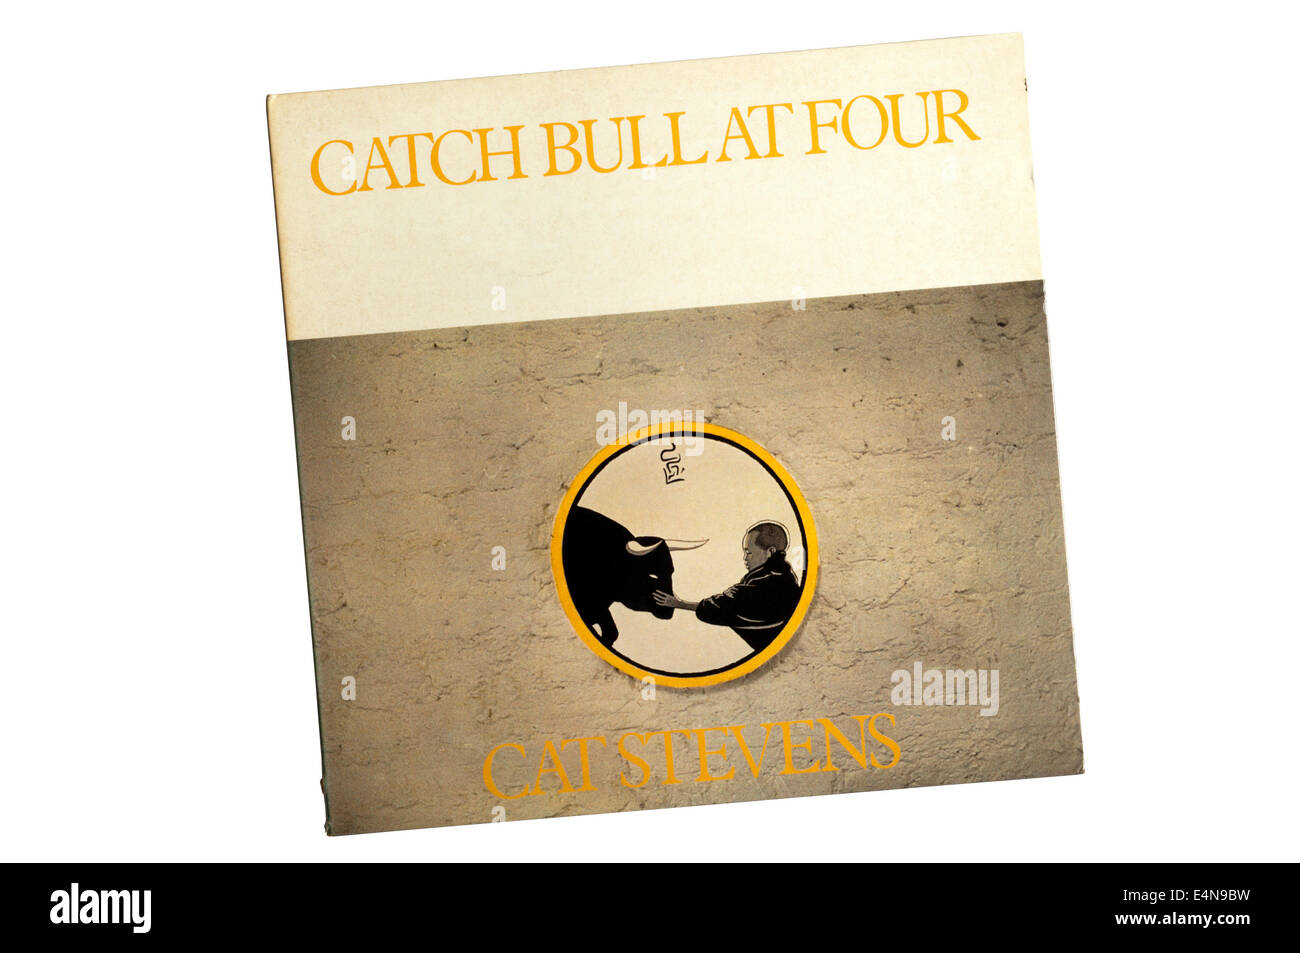 Catch Bull at Four était un album de Cat Stevens sorti en 1972. Le titre est tiré de l'un des dix taureaux de Zen. Banque D'Images